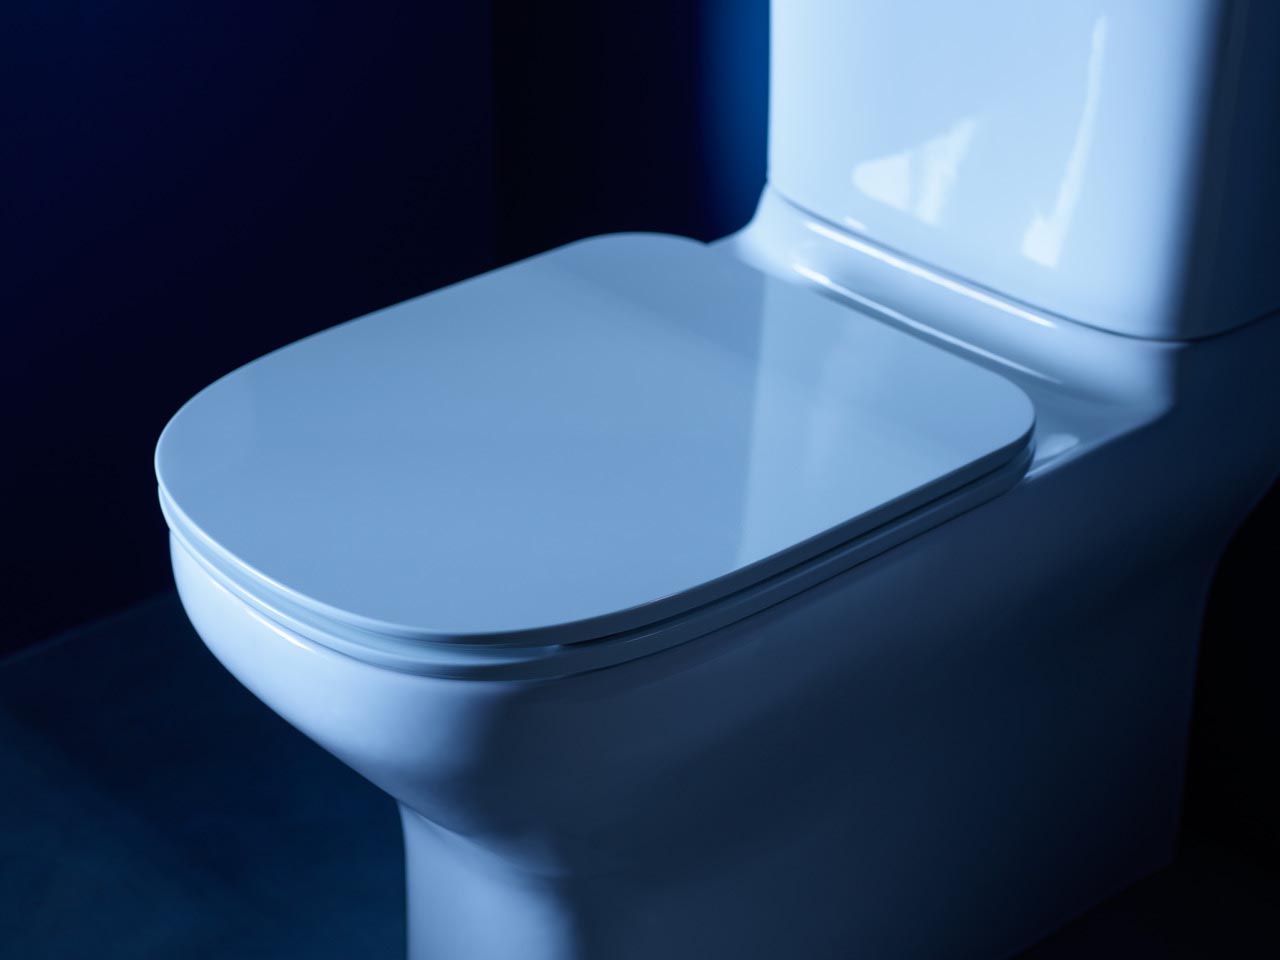 Kohler ModernLife toilet wins Red Dot Award - The Kitchen and Bathroom Blog